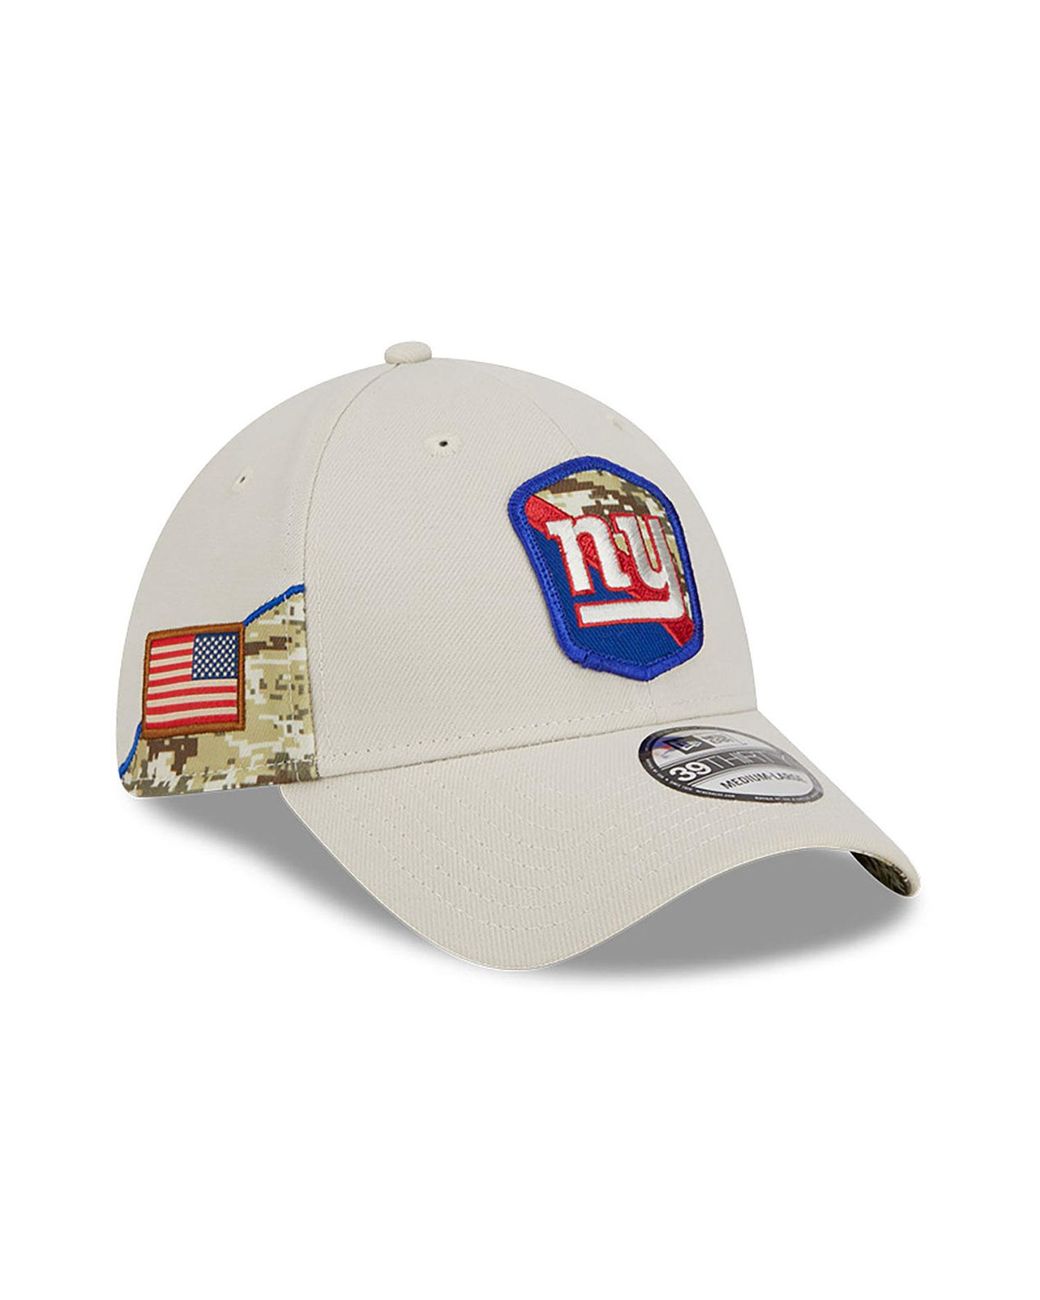 La Dodgers Dog Baseball Hat / Cap - Blue - XL